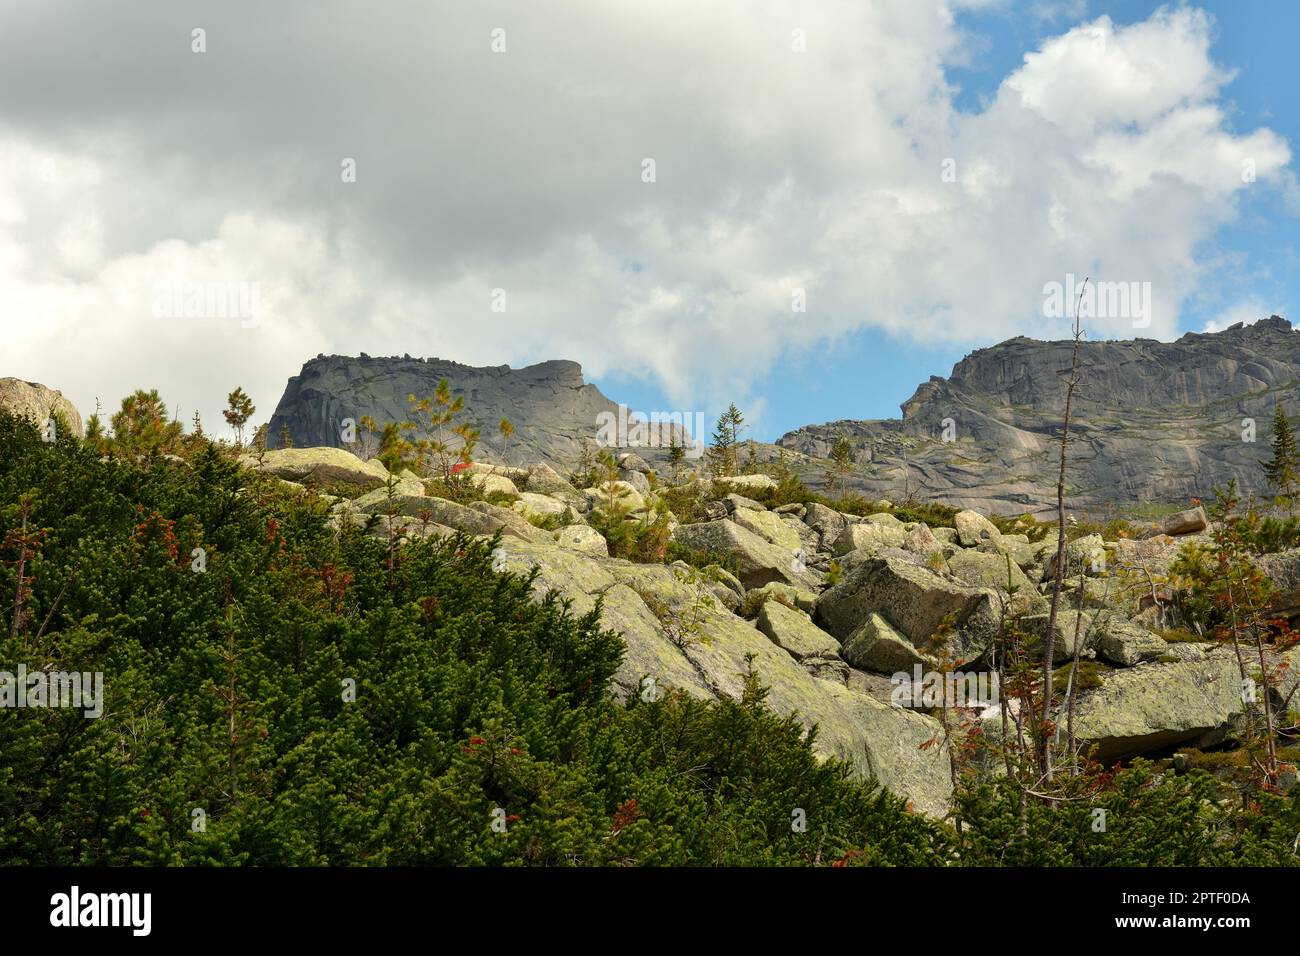 Si affaccia su un ripido pendio roccioso in una catena montuosa a forma di uomo sdraiato. Monte Sayan dormiente, Parco Naturale Ergaki, territorio di Krasnoyarsk Foto Stock